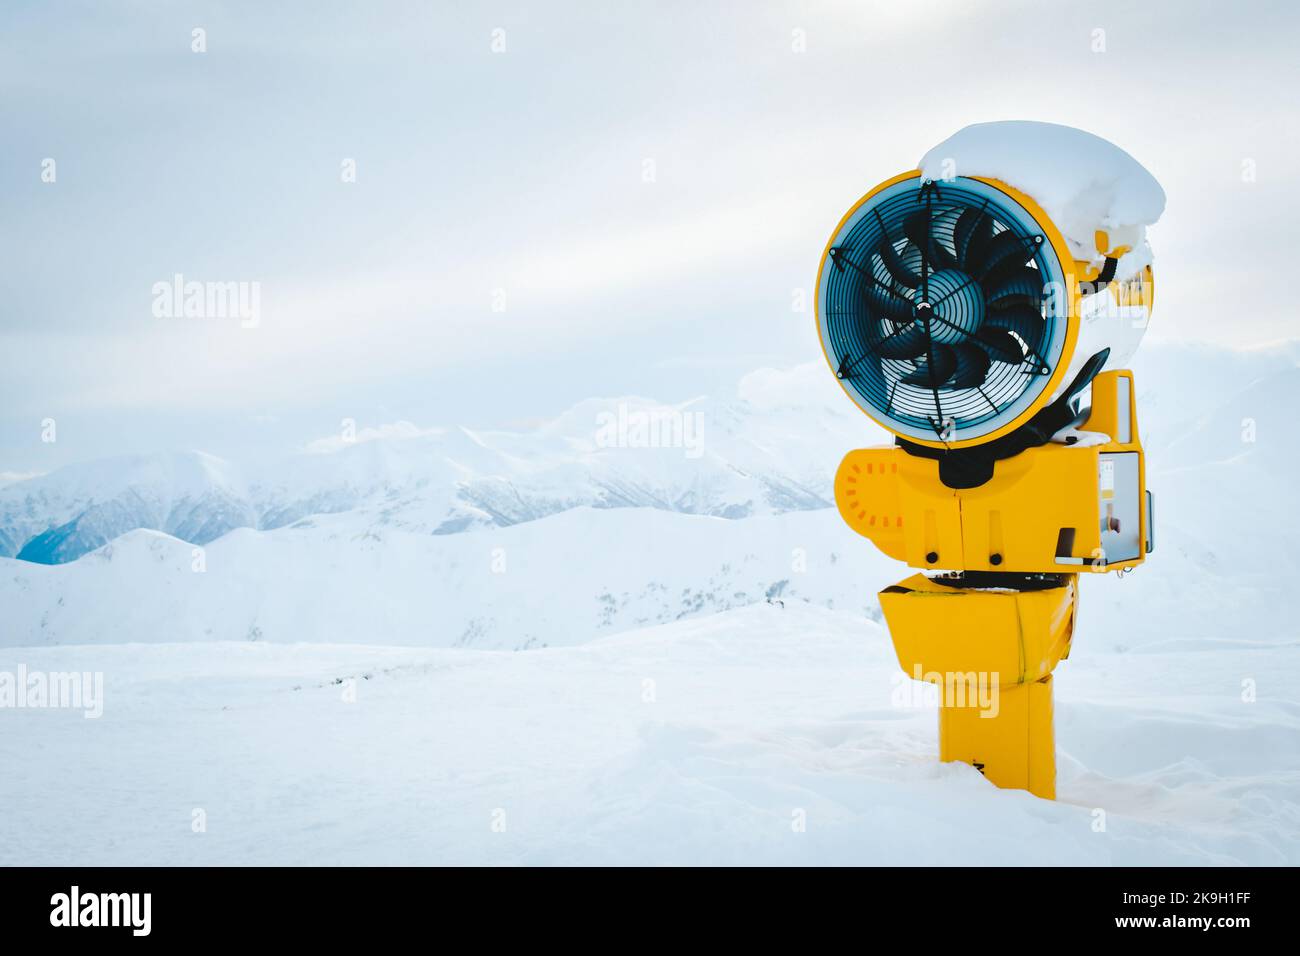 Cannone di neve gialla sotto la neve nella stazione sciistica di Gudauri in montagne innevate dopo una fresca caduta di neve. Buona situazione di neve e finta tecnologia neve Foto Stock